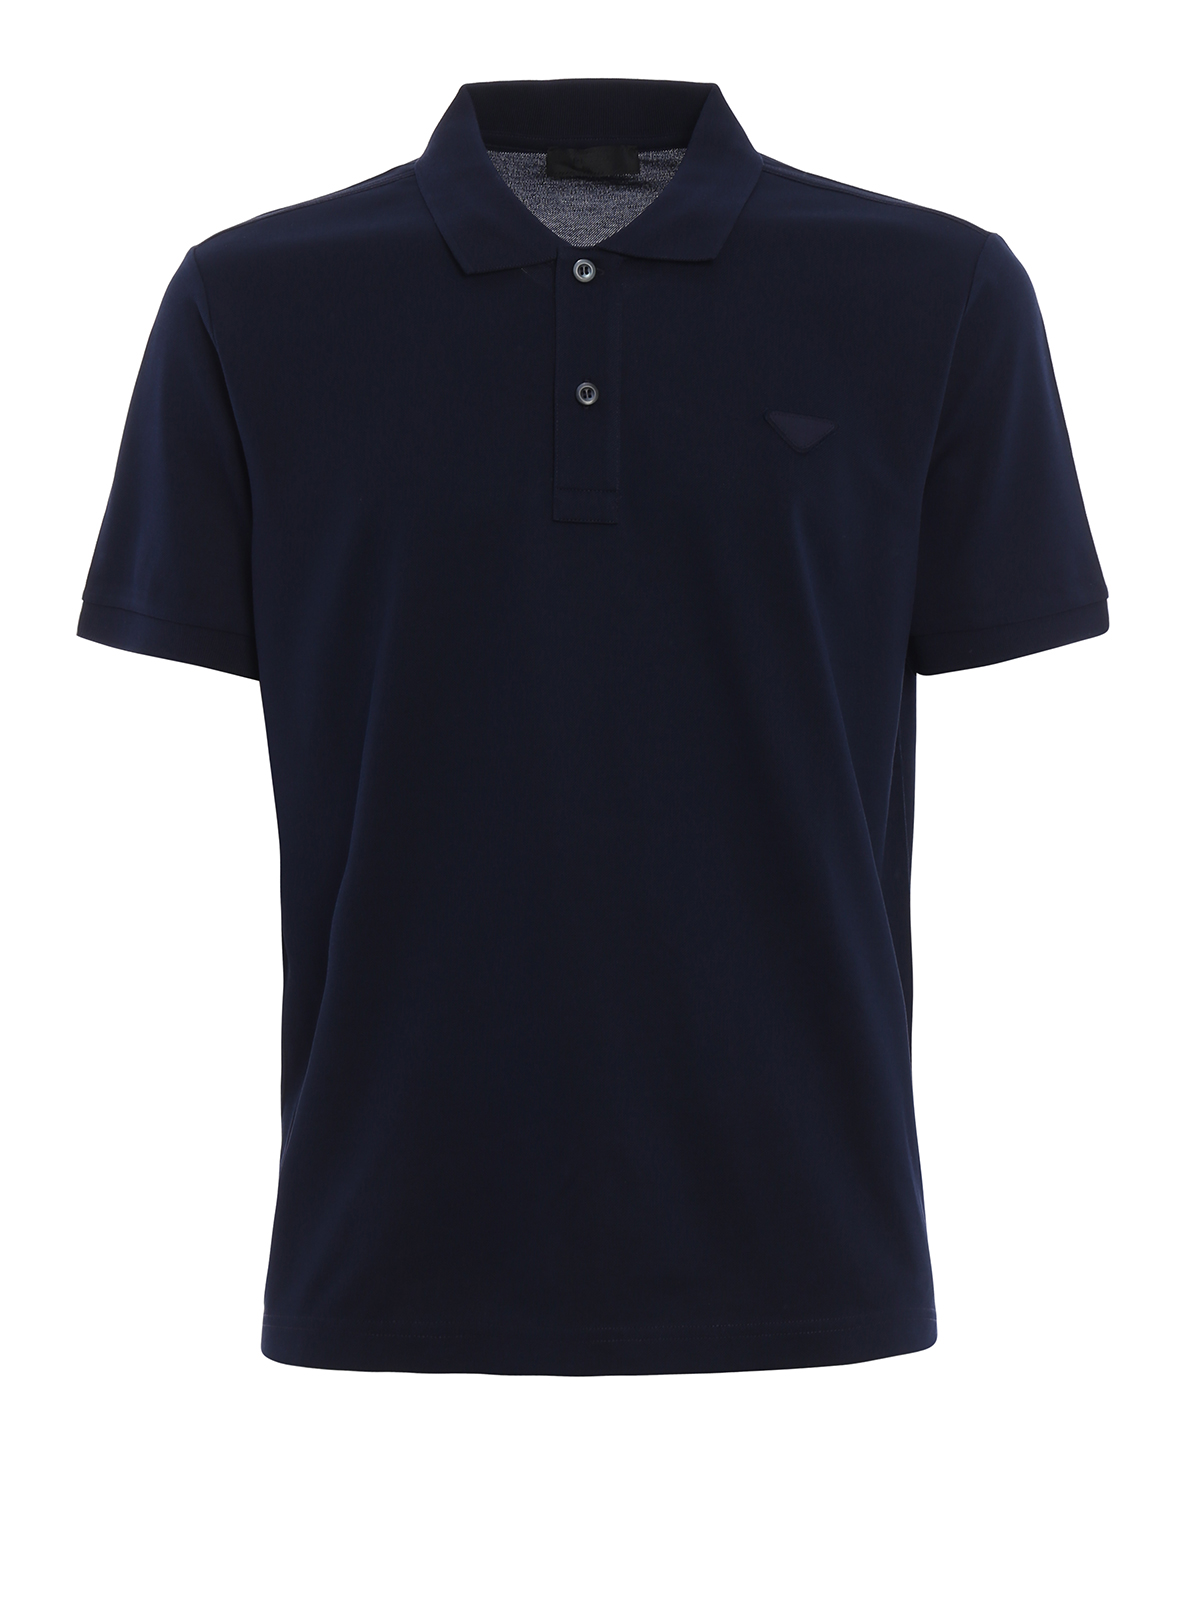 ポロシャツ Prada - ポロシャツ メンズ - ブルー - UJM730XGSF0124